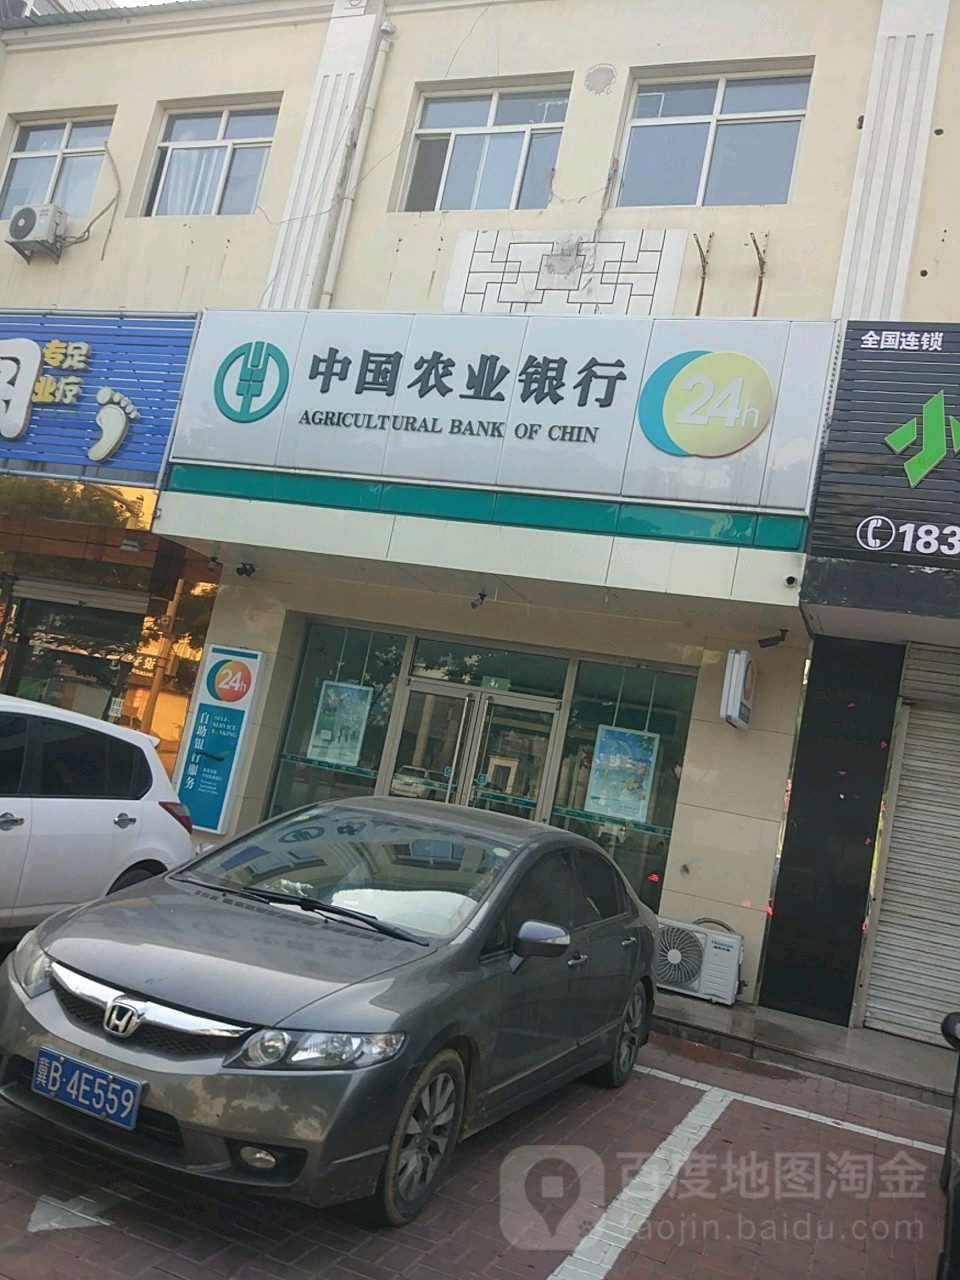 中國農業銀行24小時自助銀行服務(肥子路店)